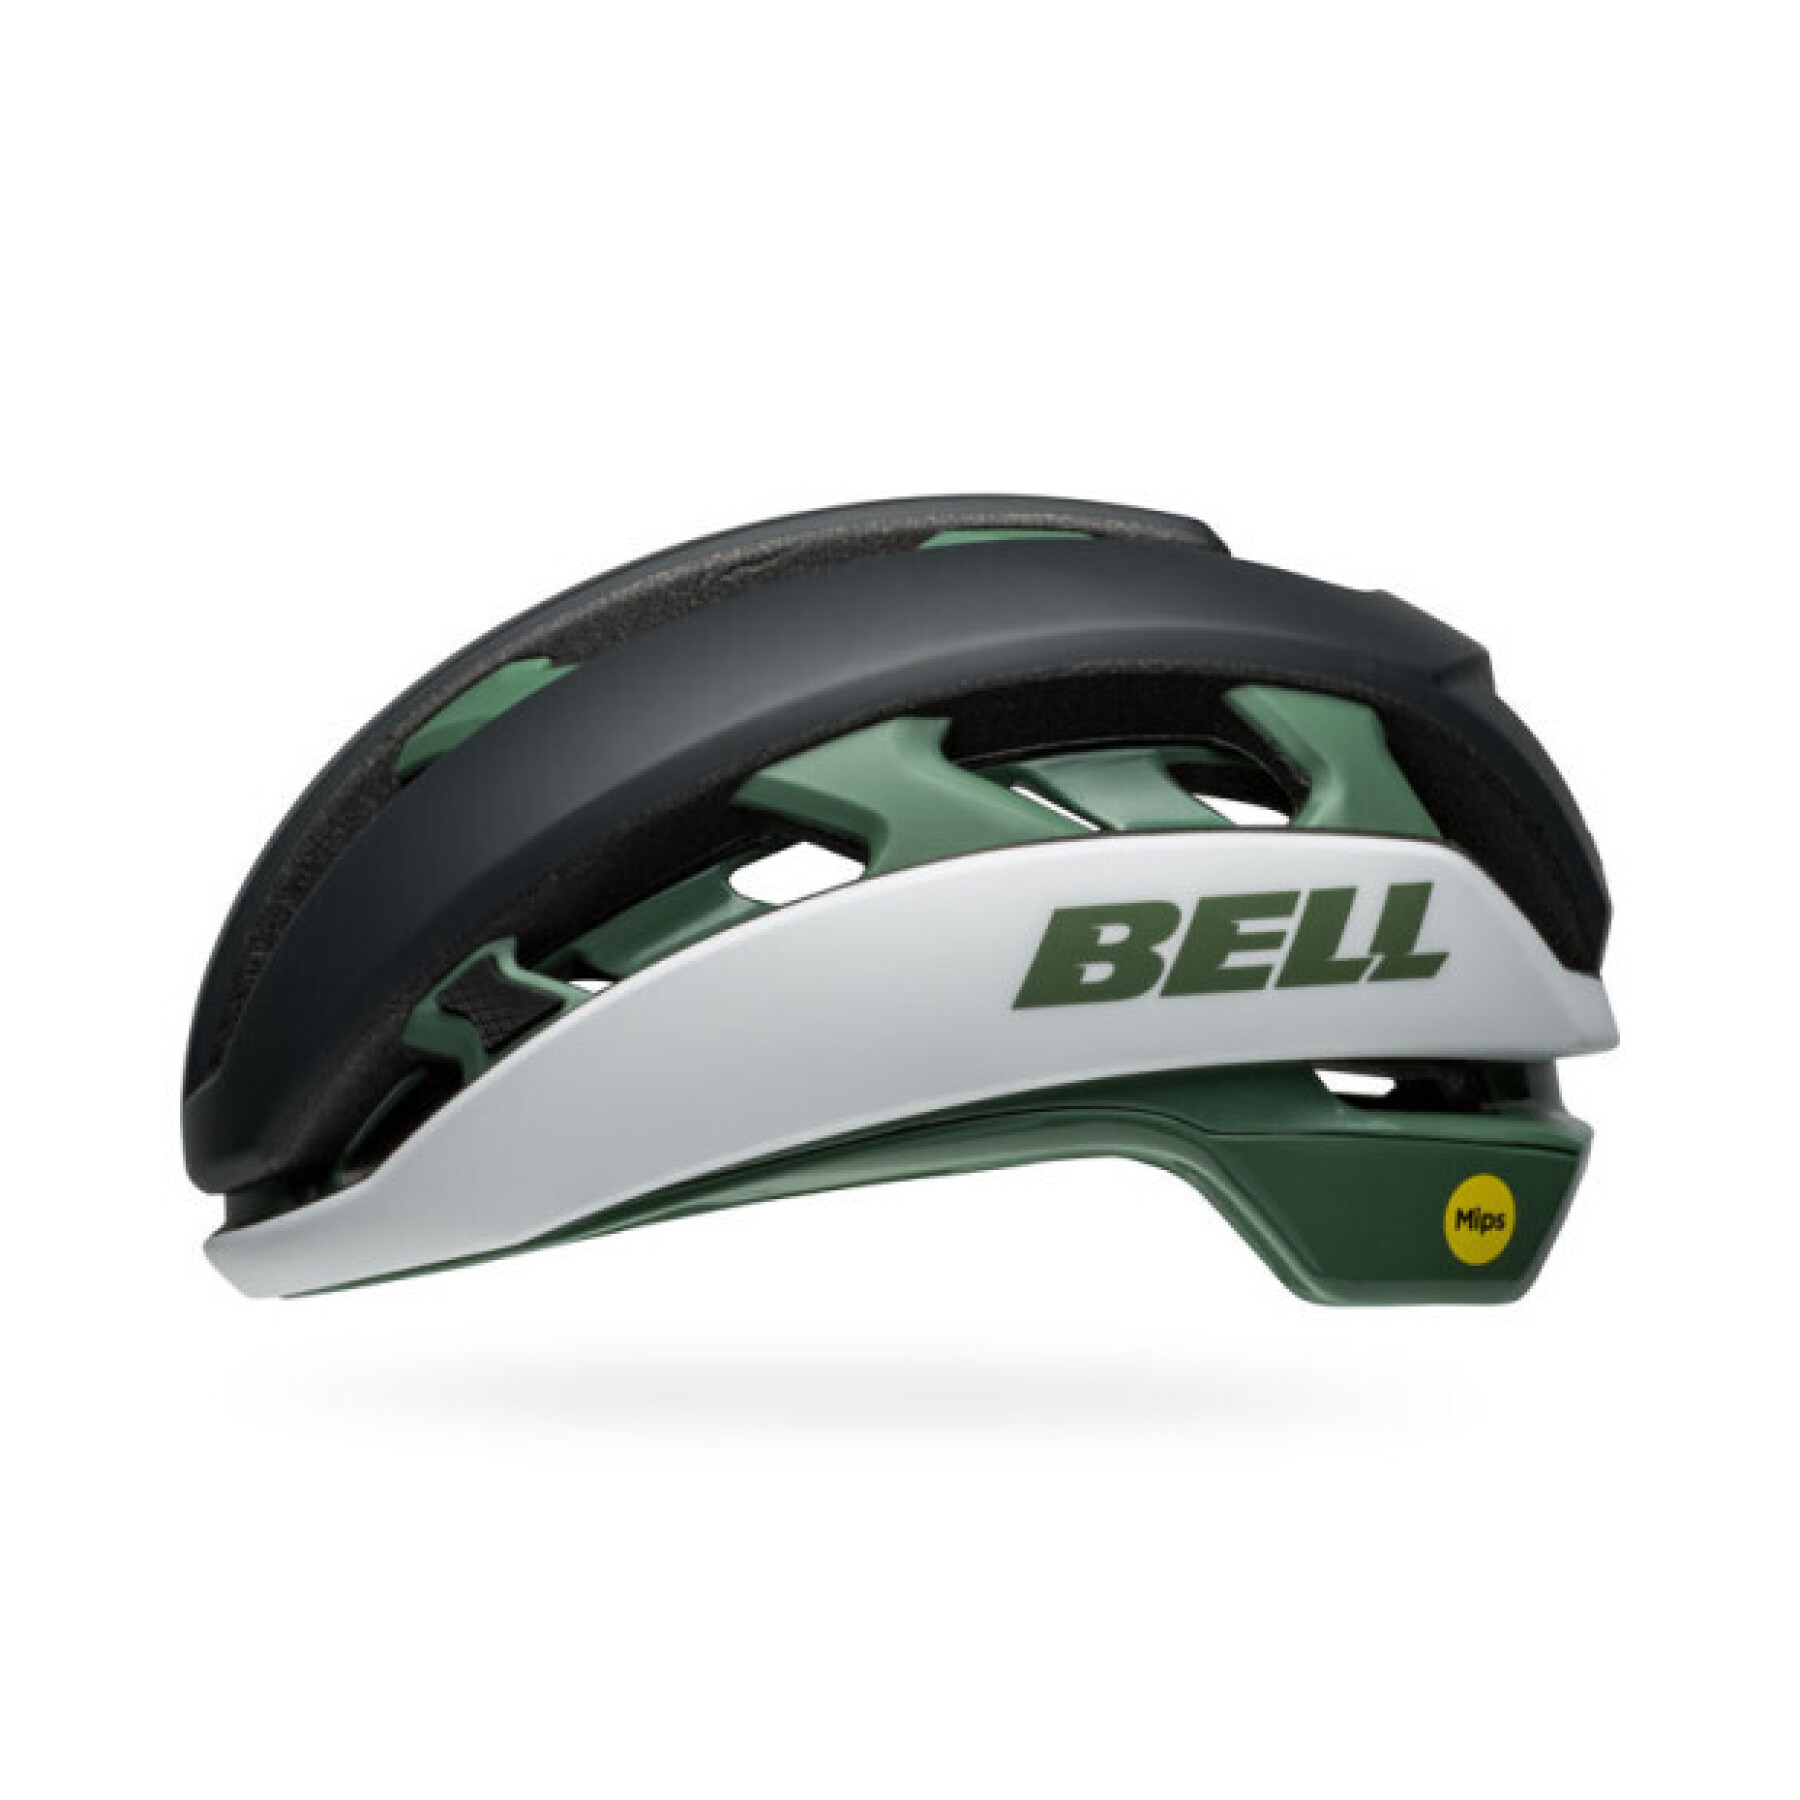 Road bike helmet Bell XR Spherical